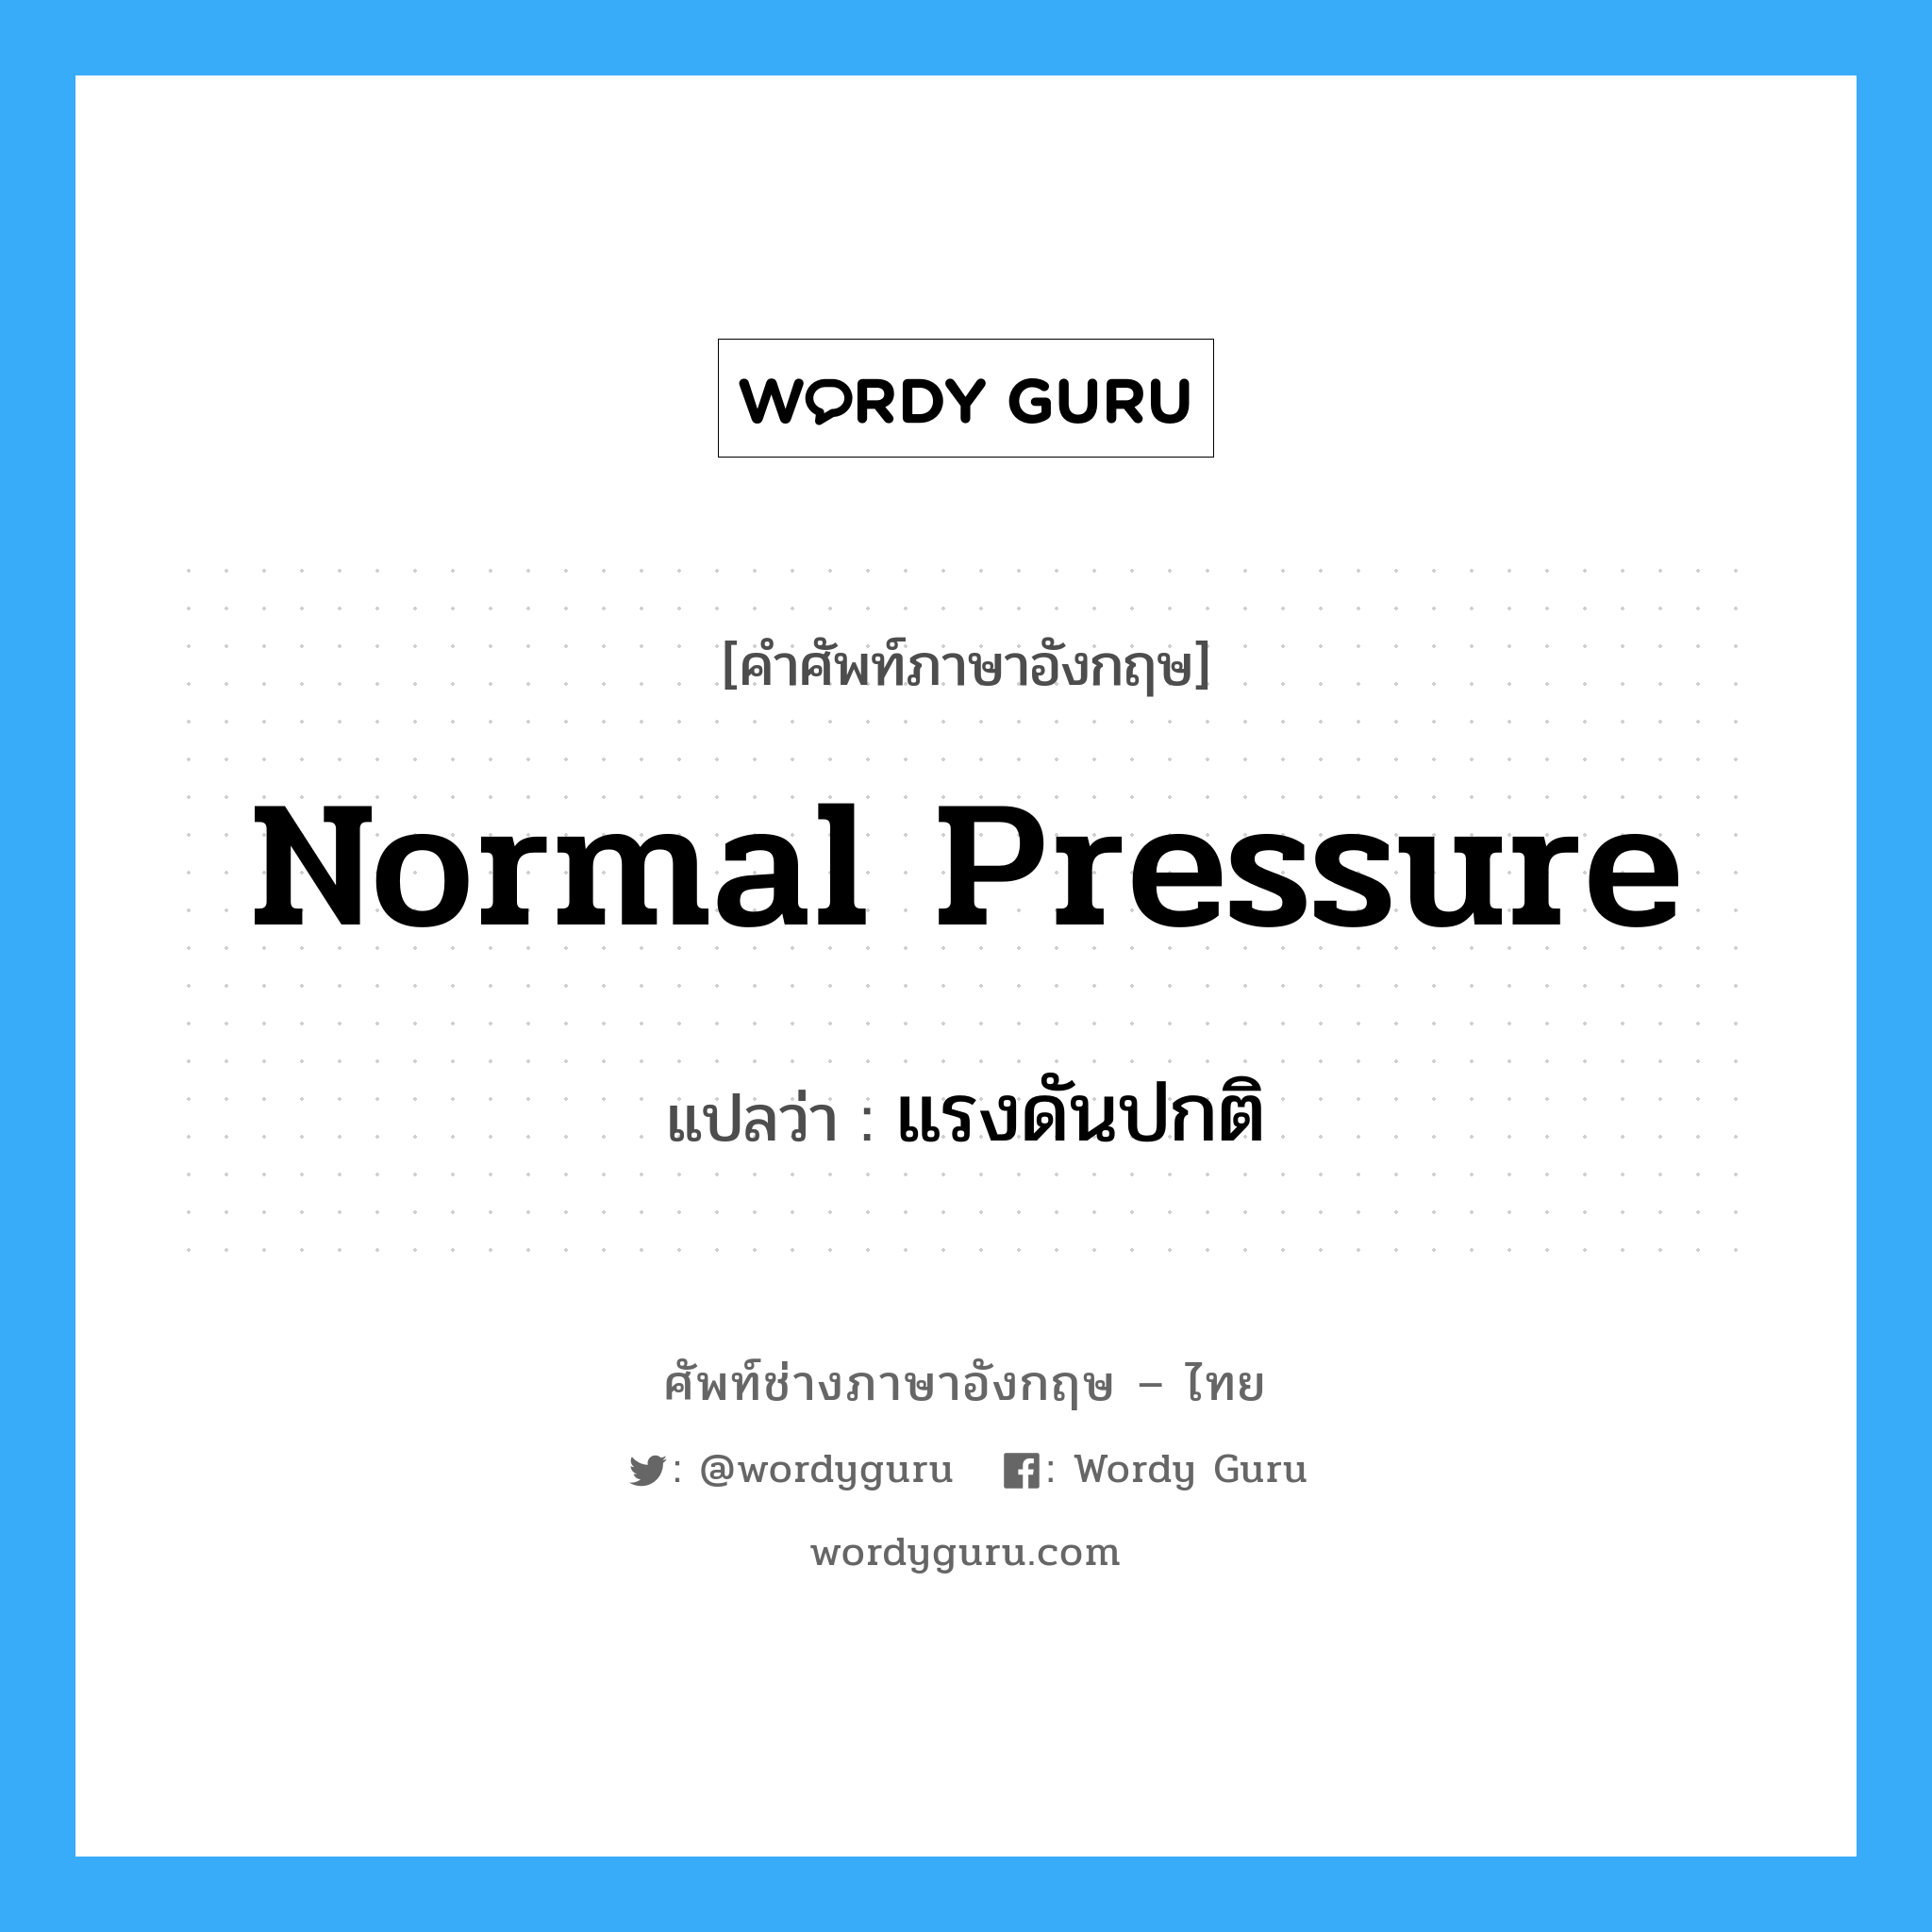 แรงดันปกติ ภาษาอังกฤษ?, คำศัพท์ช่างภาษาอังกฤษ - ไทย แรงดันปกติ คำศัพท์ภาษาอังกฤษ แรงดันปกติ แปลว่า normal pressure